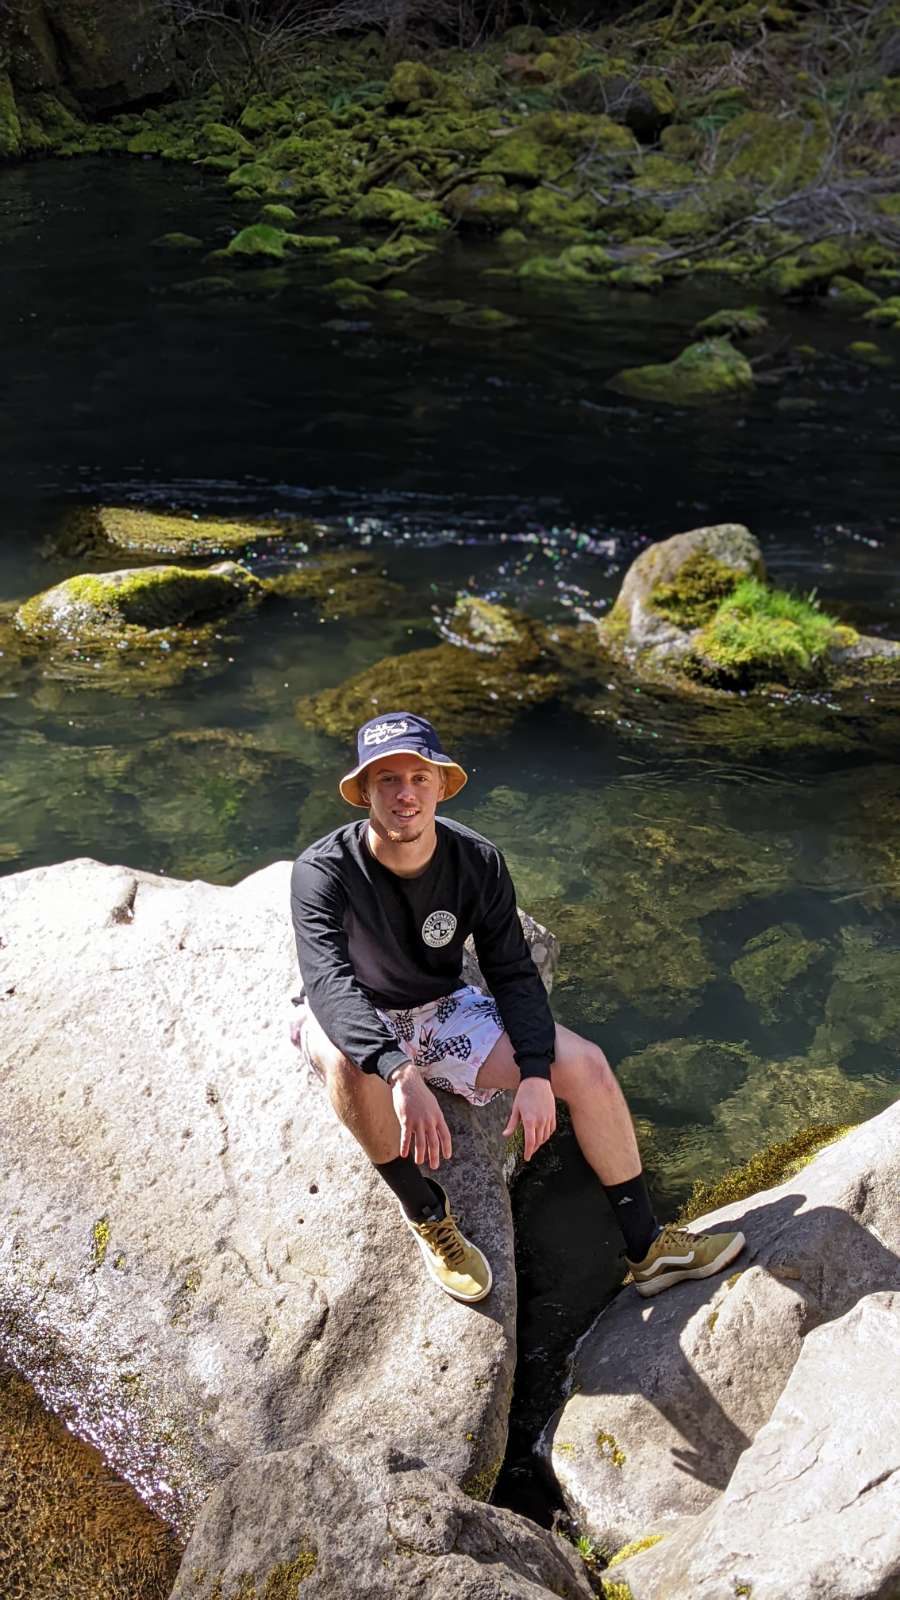 Joshua Bettencourt, OP Trip Coordinator, shown sitting on rocks near water